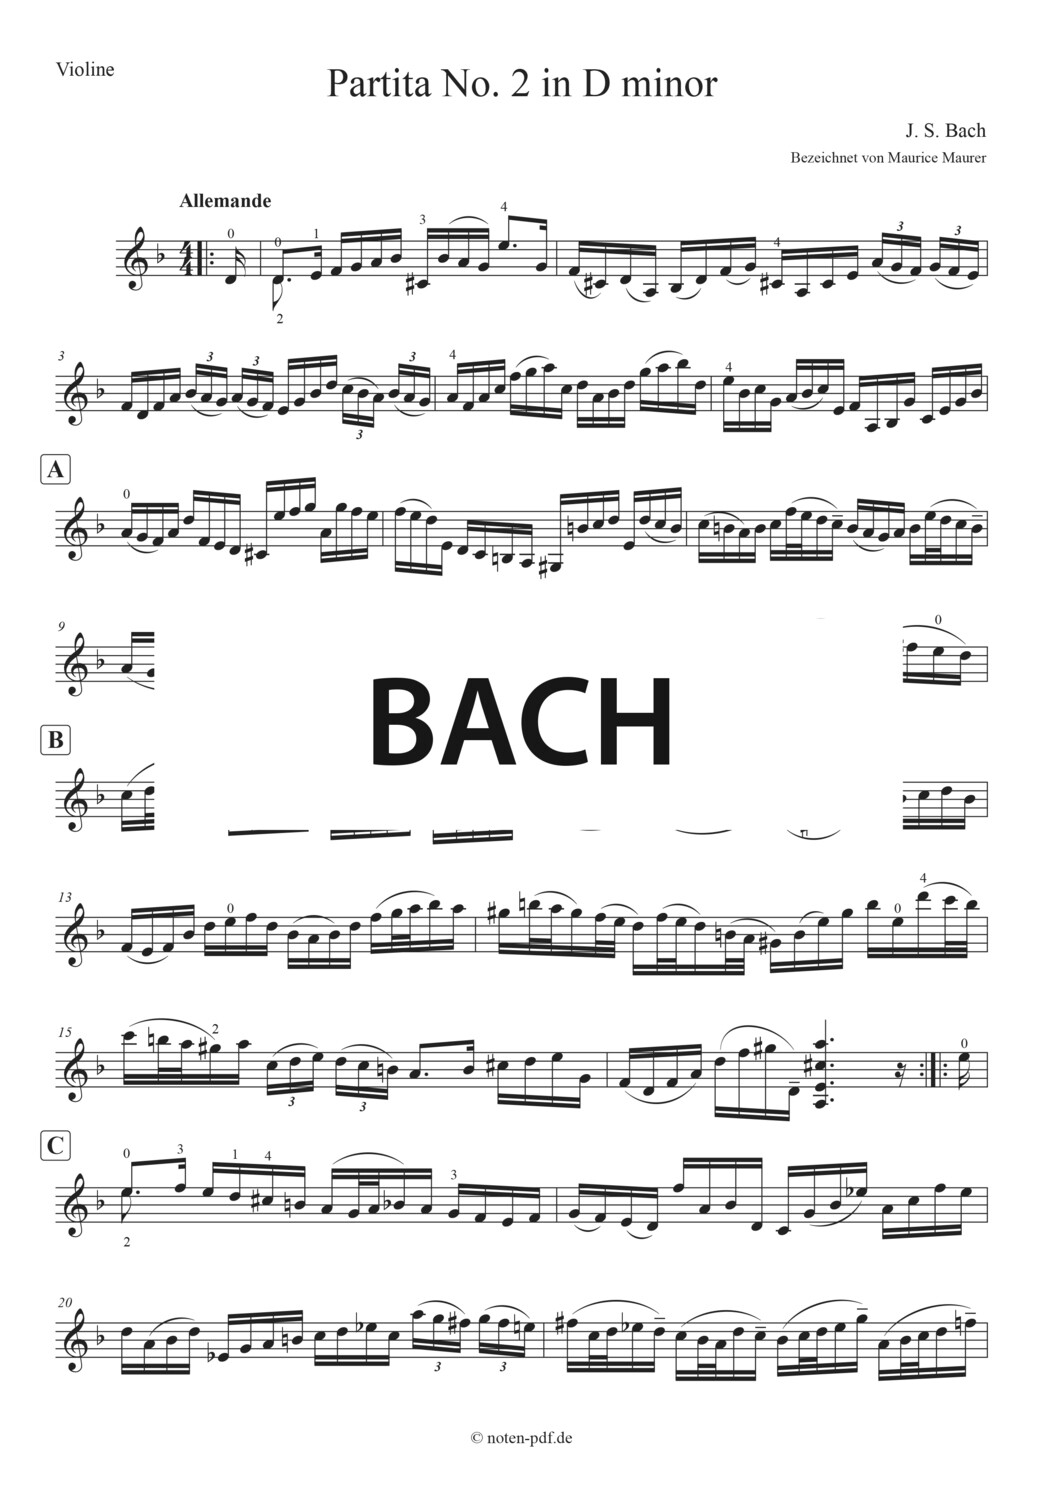 Bach: Partita No. 2 - 1. Mov. "Allemande"